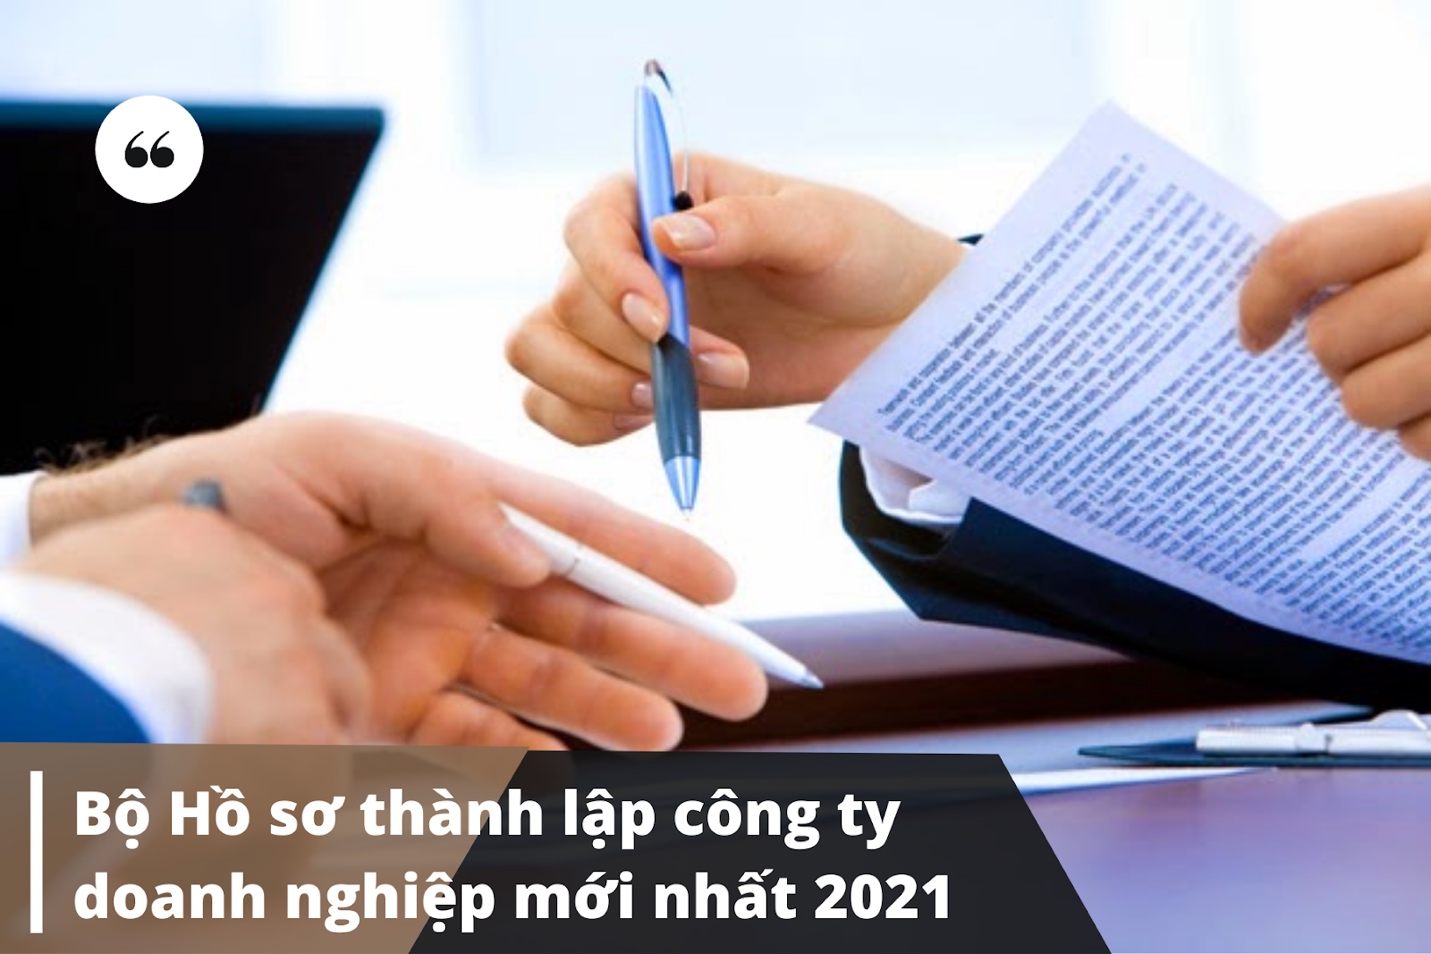 Hồ sơ thành lập công ty, doanh nghiệp mới nhất 2021